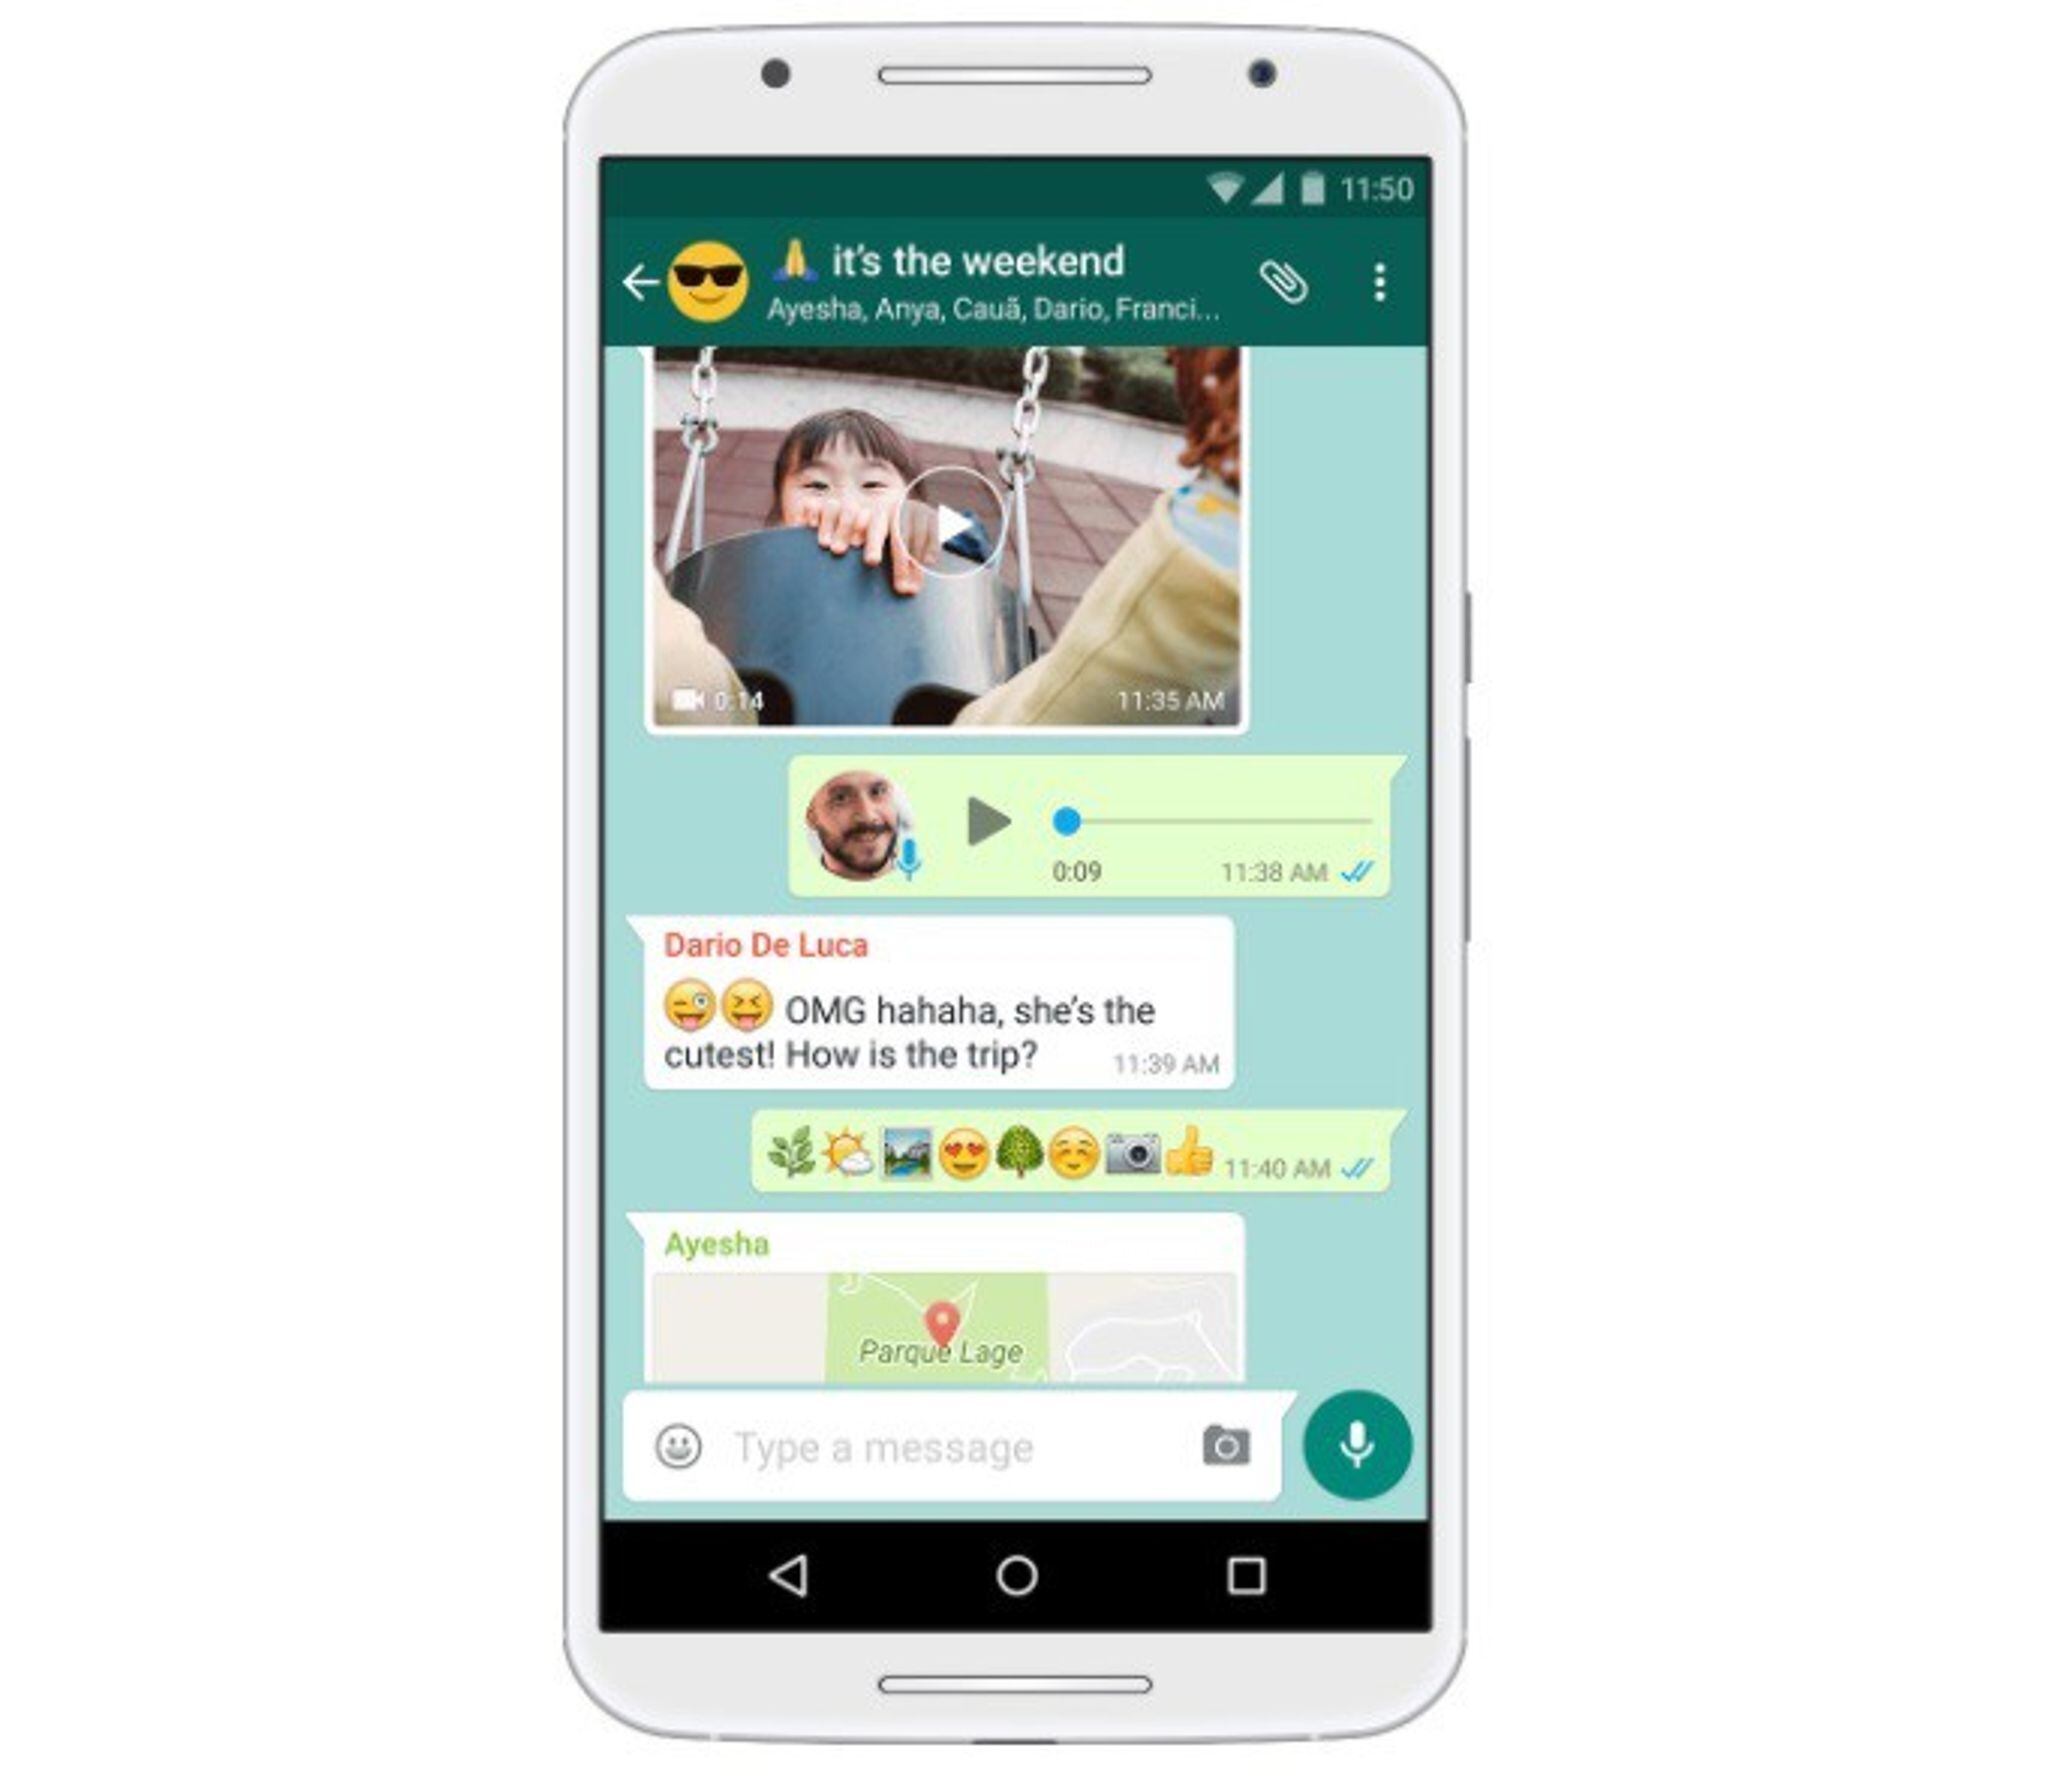 En Whatsapp es posible buscar palabras y mensajes por fechas